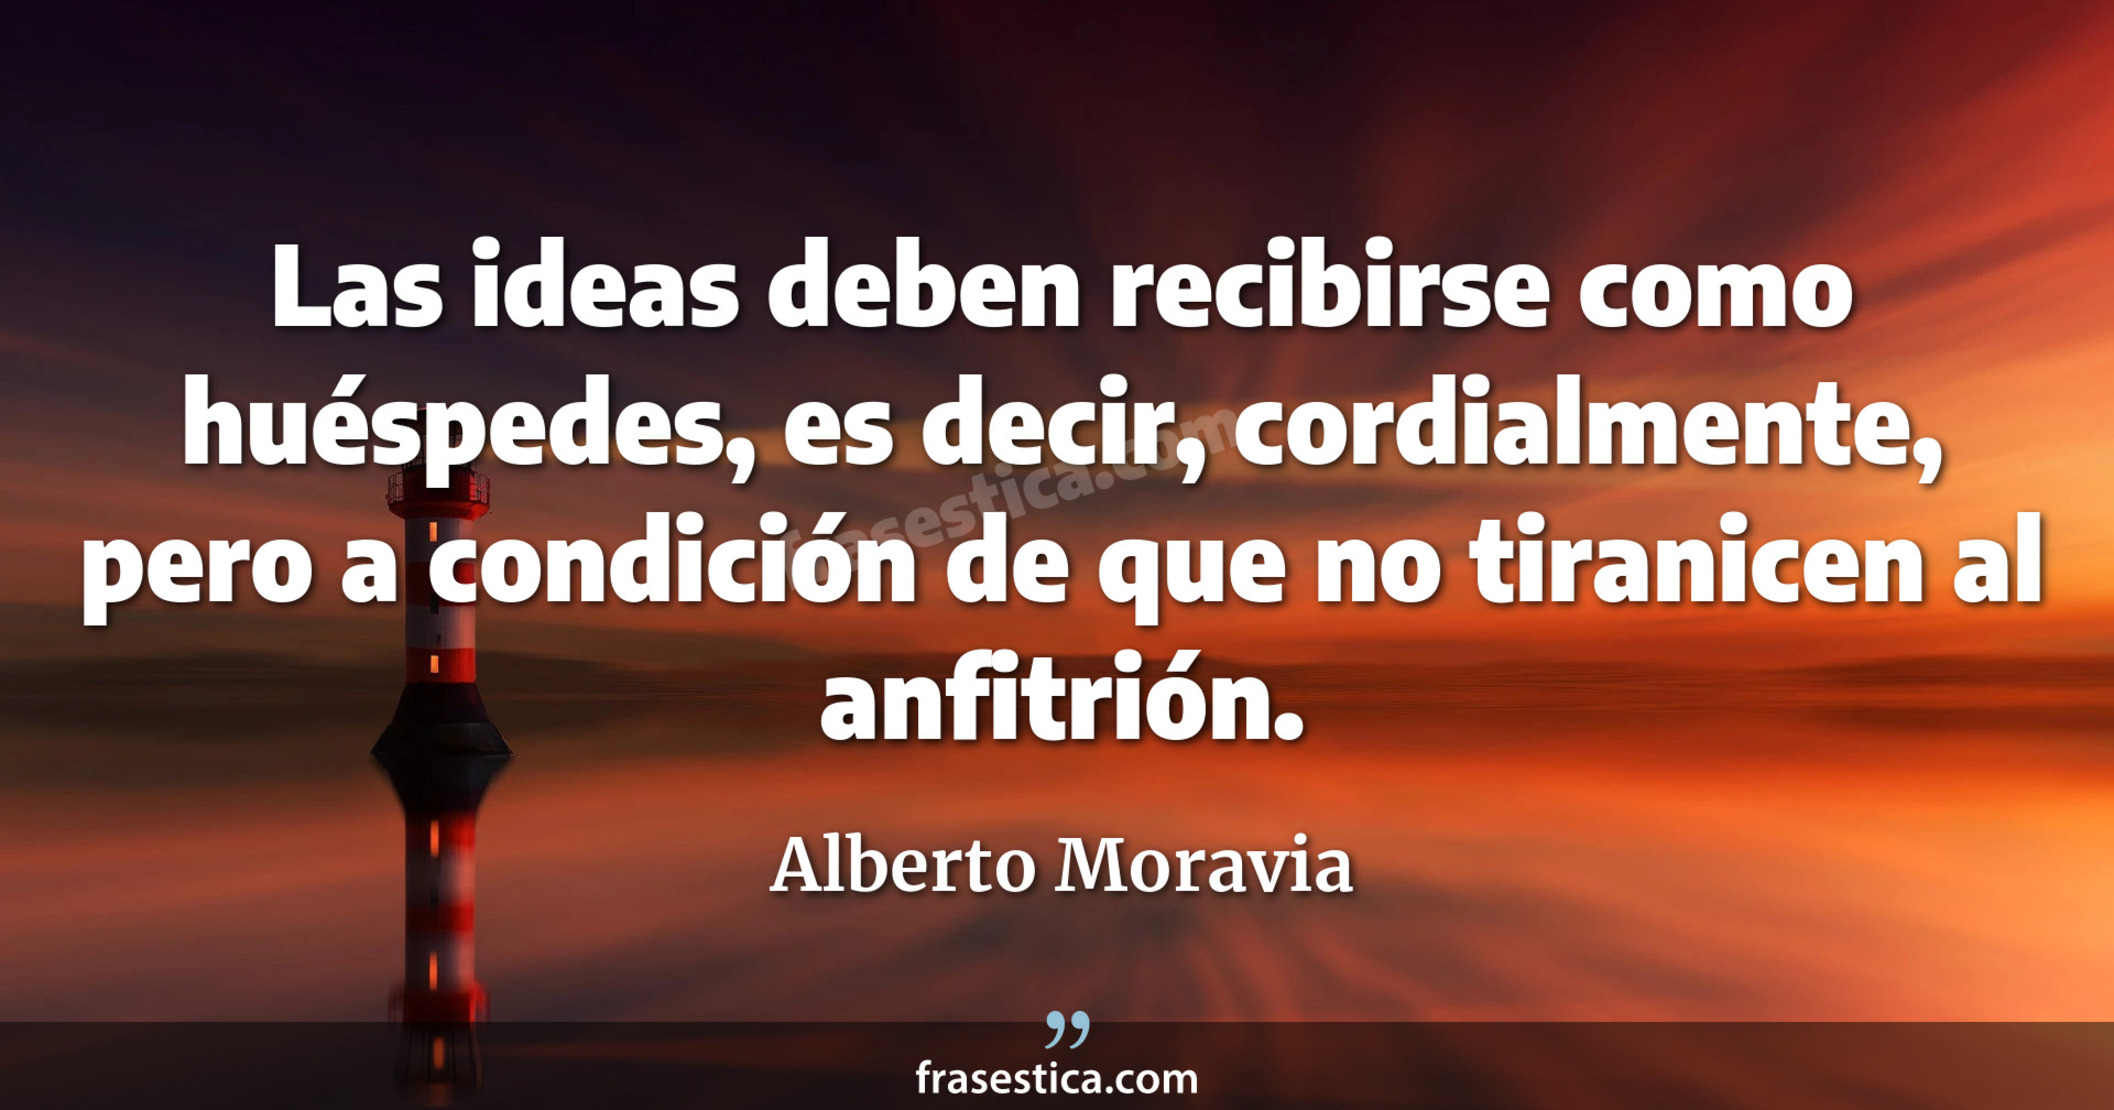 Las ideas deben recibirse como huéspedes, es decir, cordialmente, pero a condición de que no tiranicen al anfitrión. - Alberto Moravia